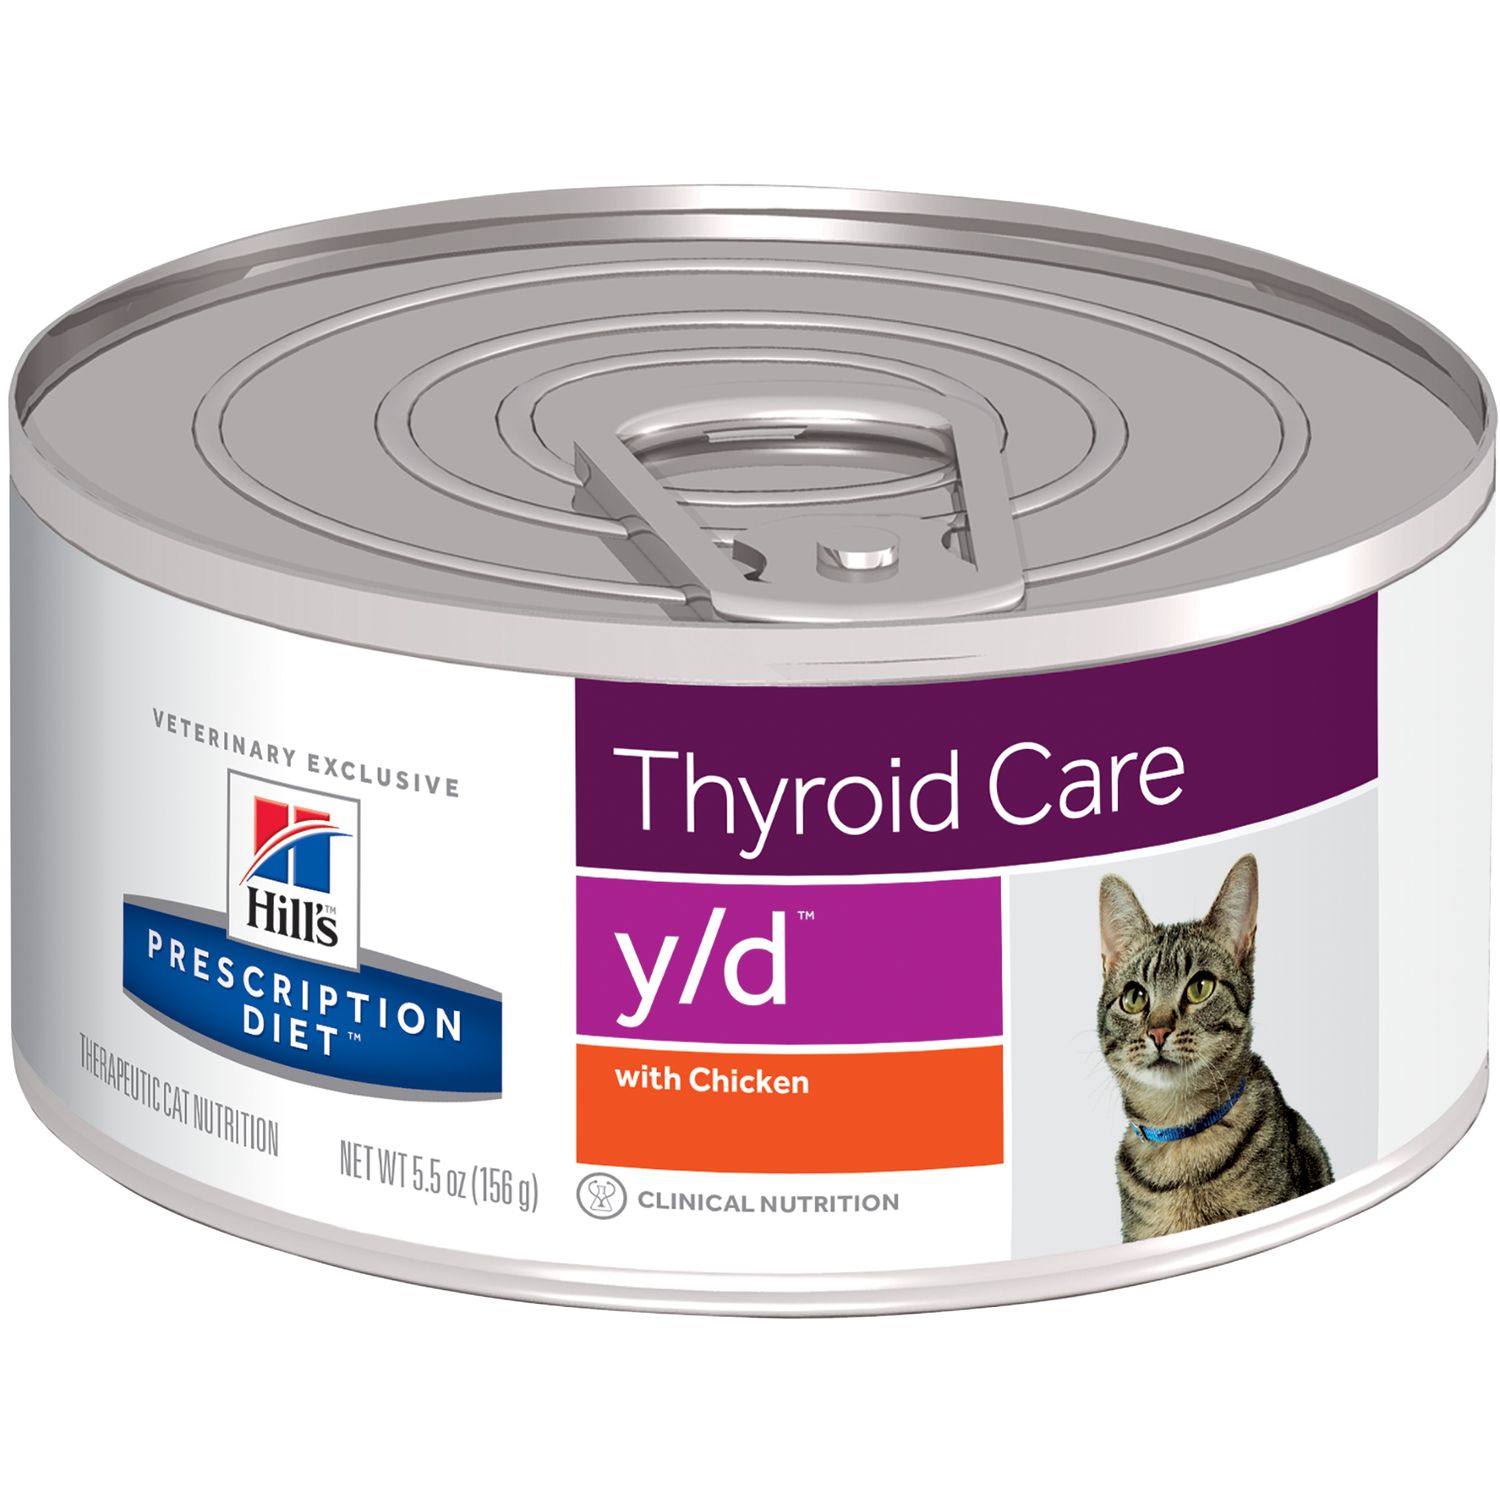 hills-pd-fel-yd-thyroid-care-can-156g